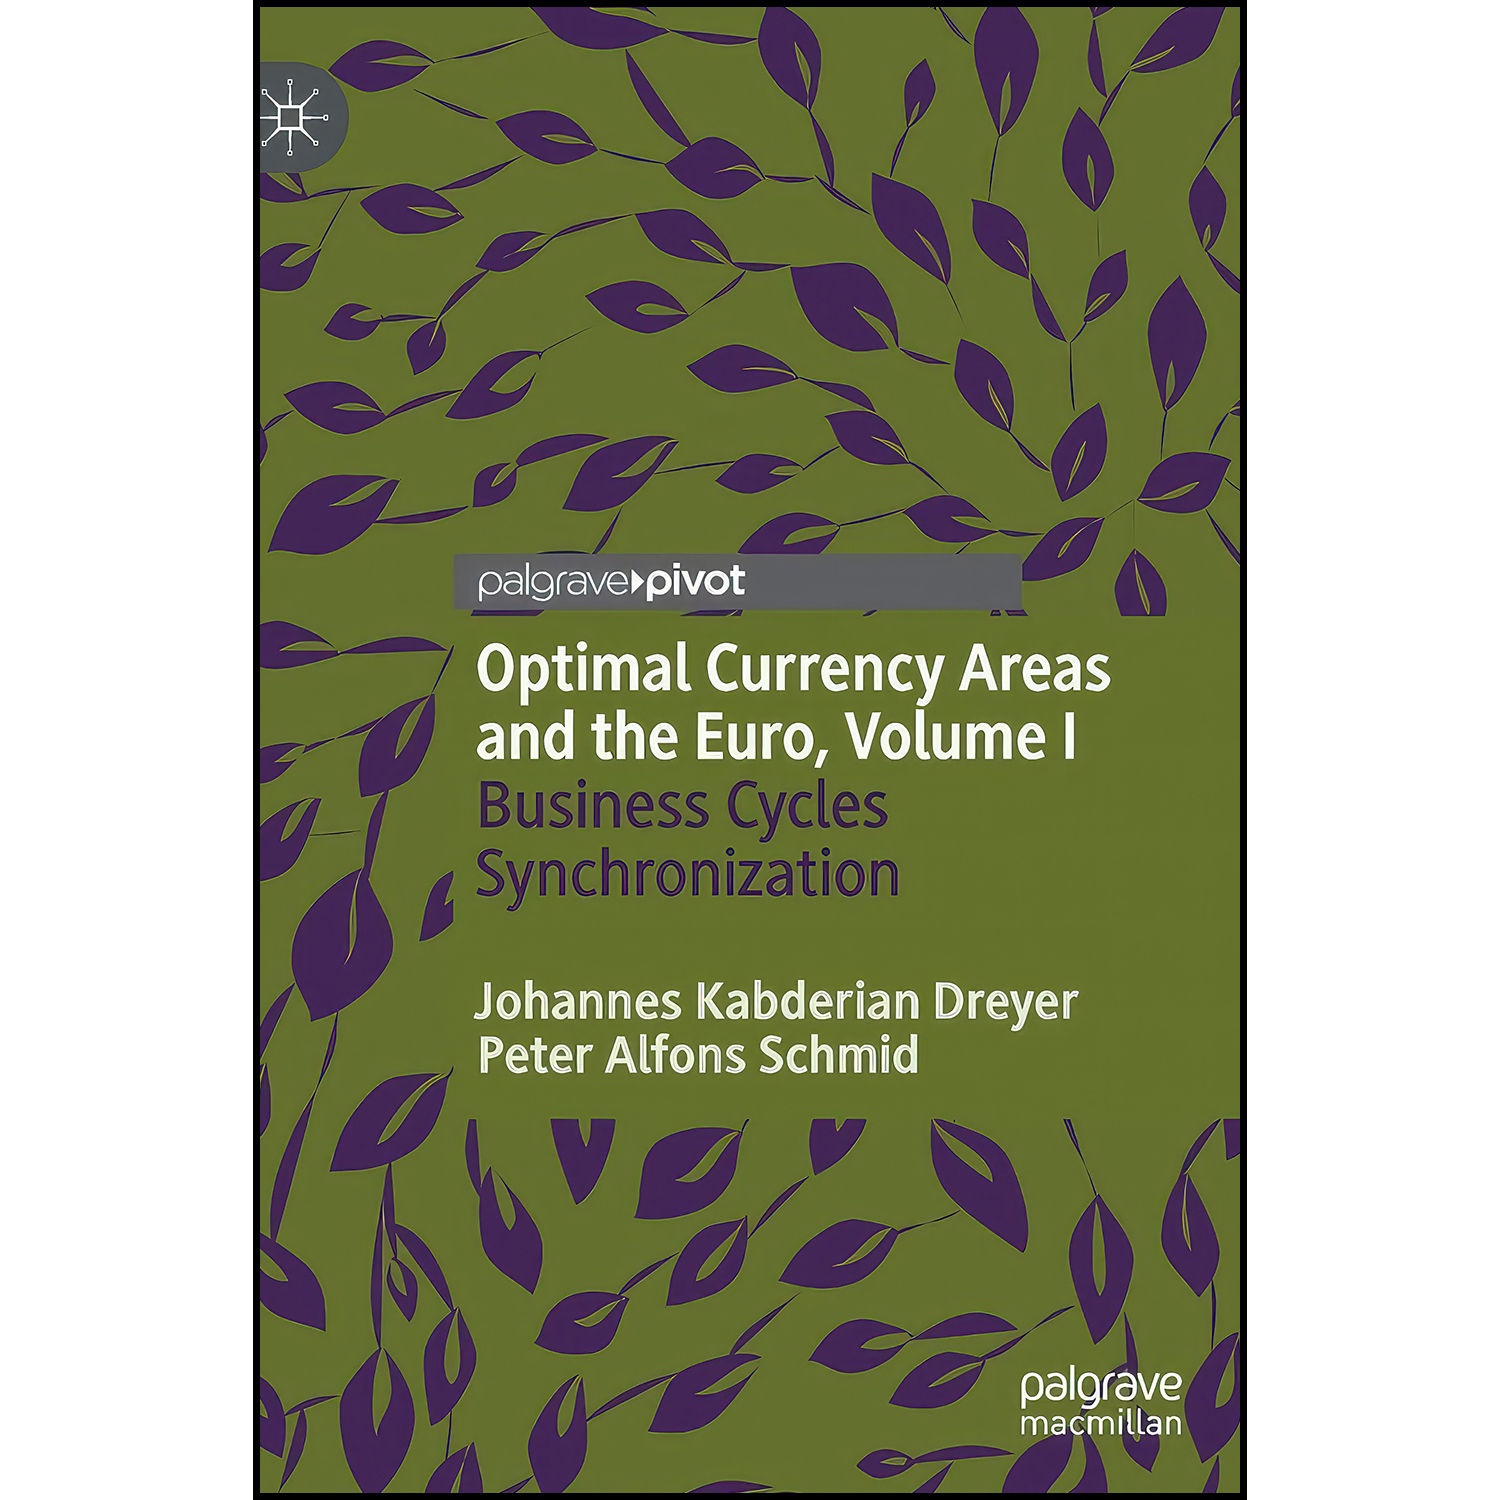 کتاب Optimal Currency Areas and the Euro, Volume I اثر جمعي از نويسندگان انتشارات Palgrave Pivot